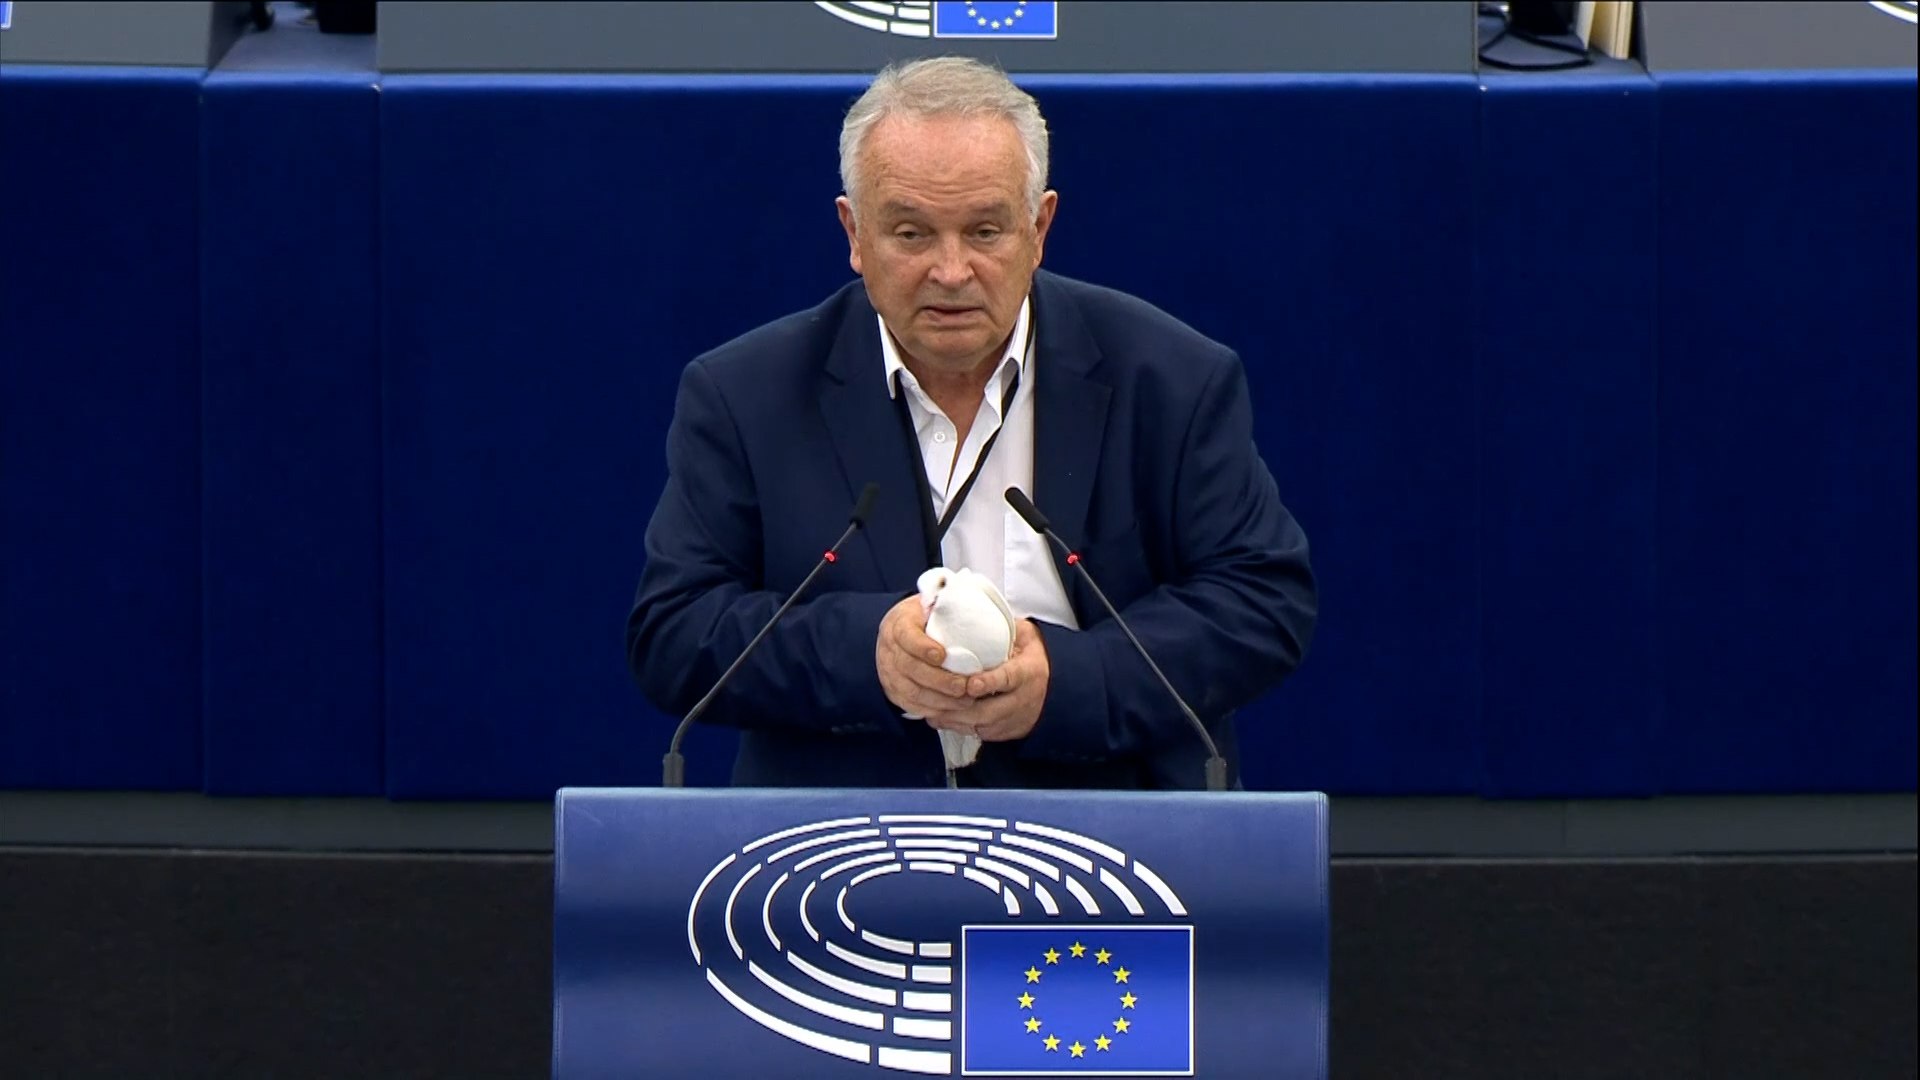 Un eurodiputado suelta una paloma en el Parlamento Europeo para pedir la paz